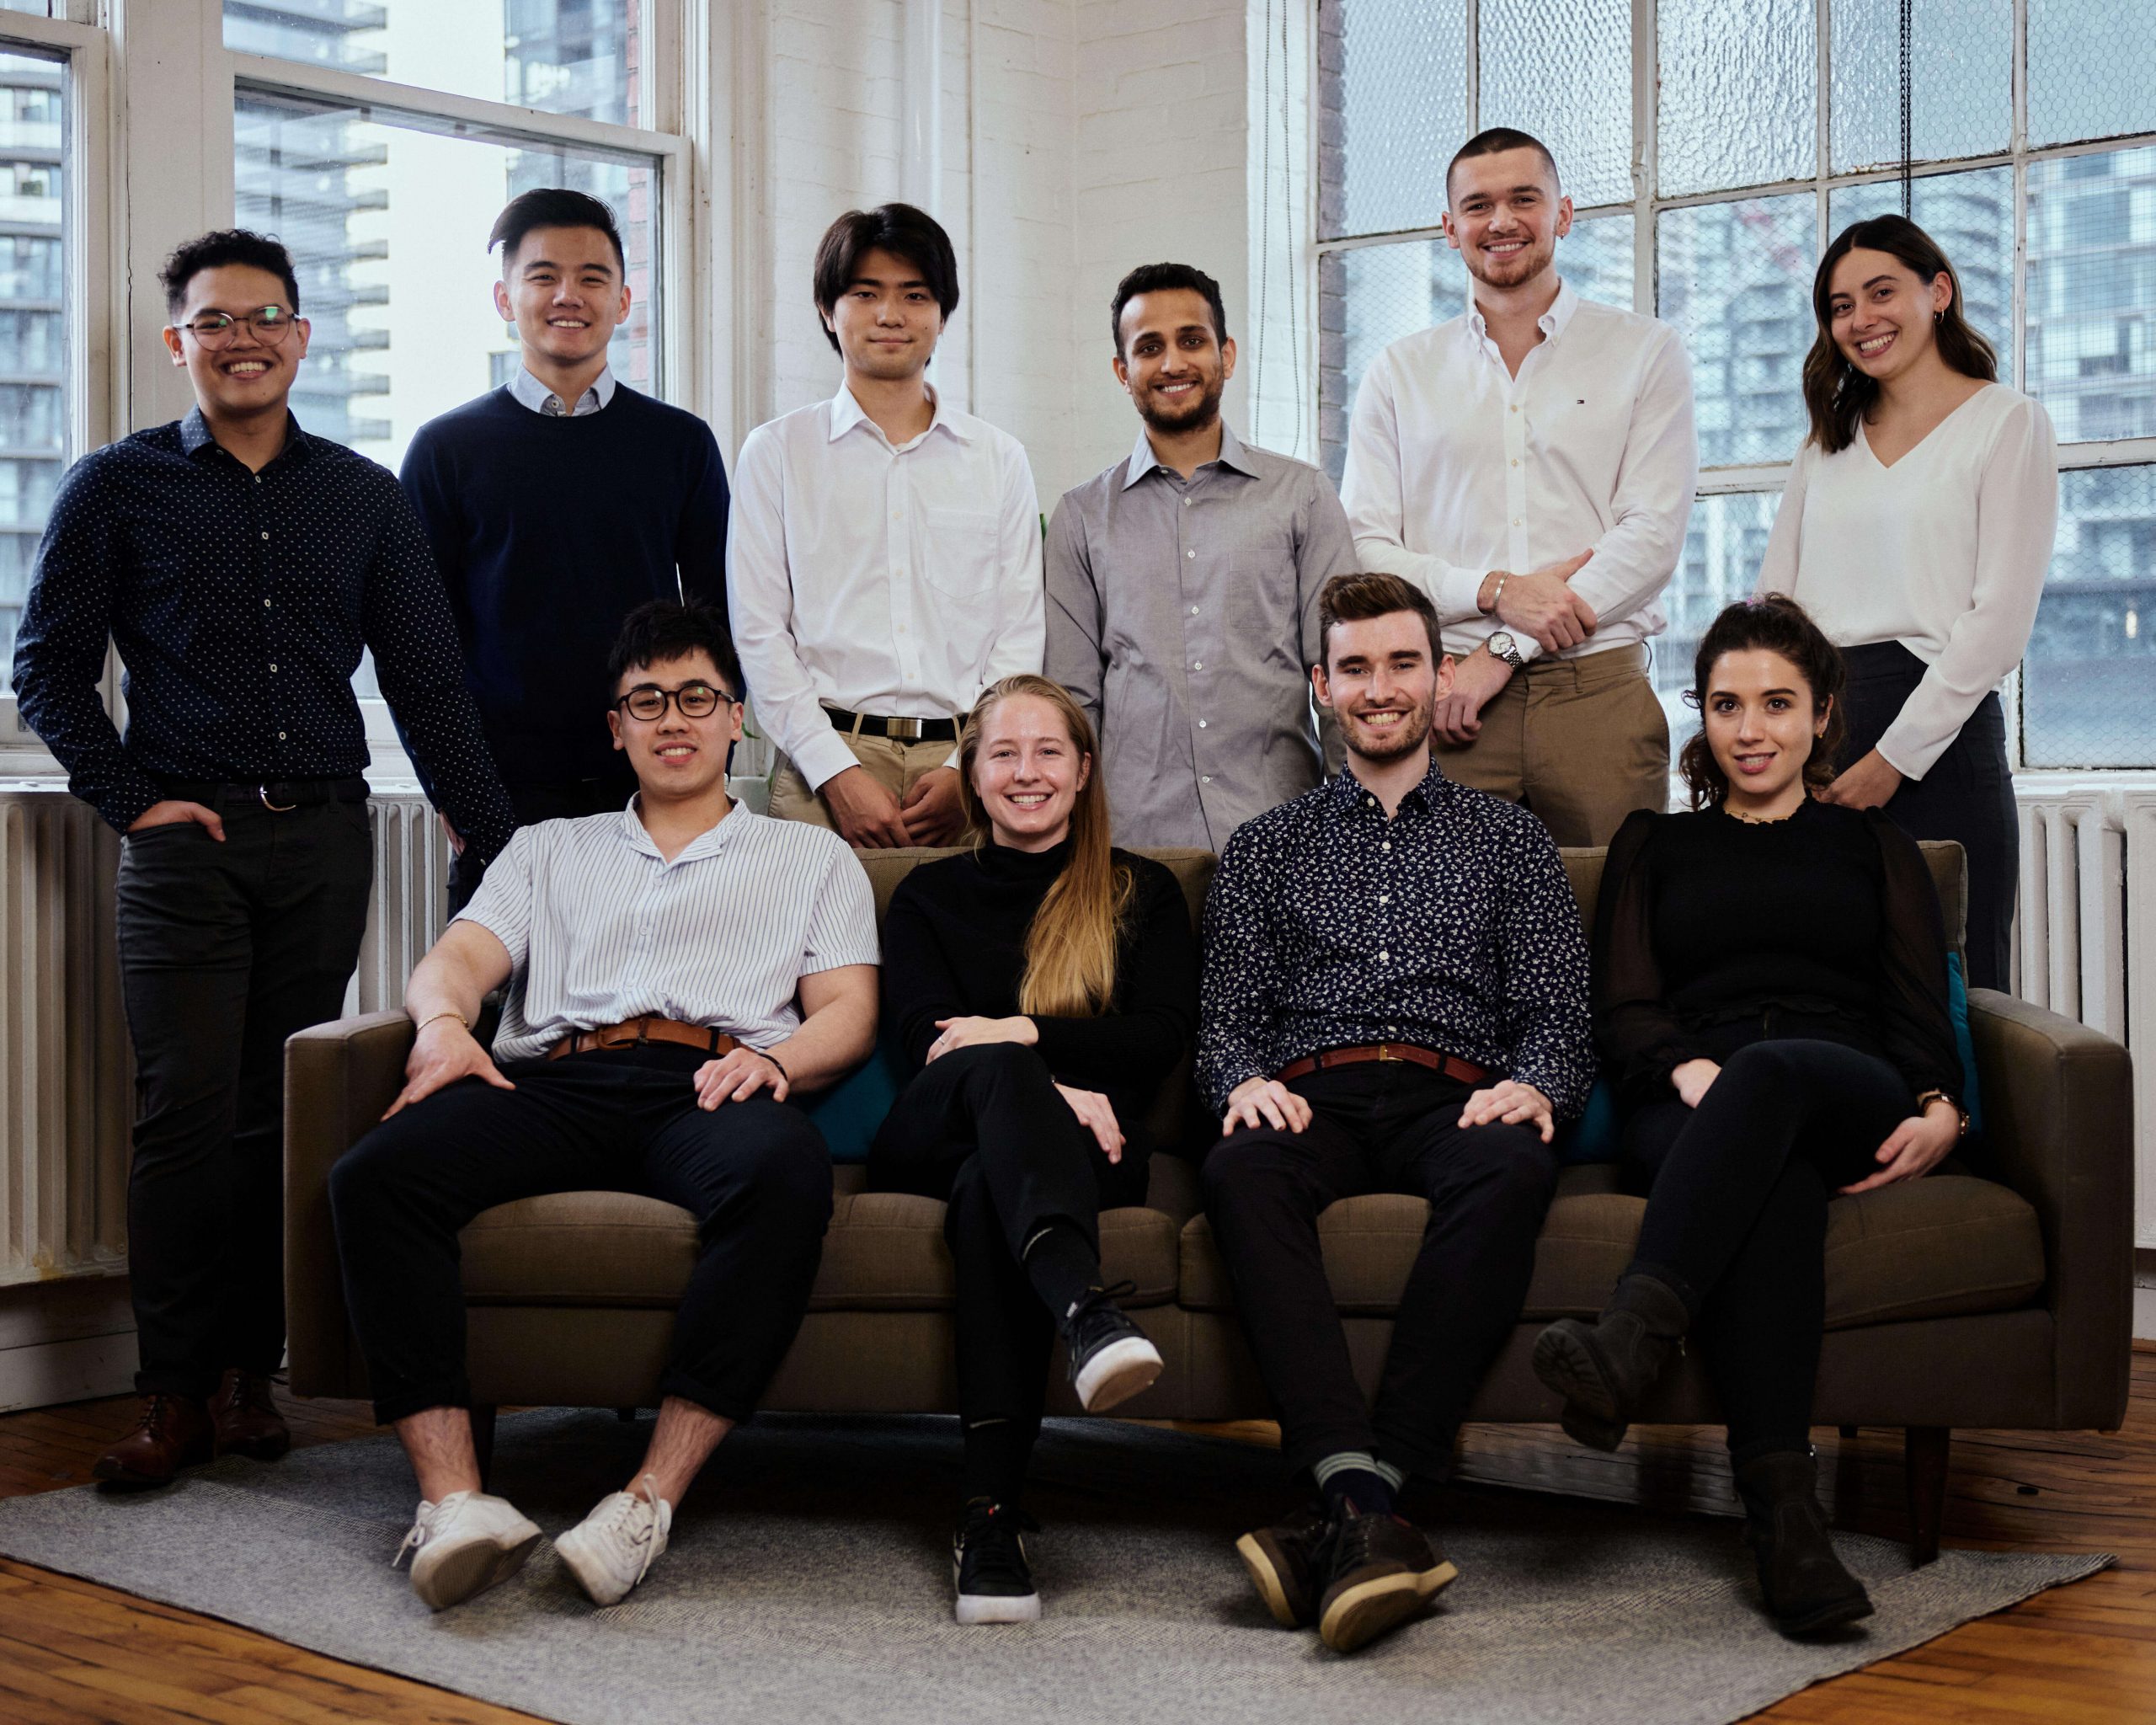 The Nimbus Learning - un groupe de 10 travailleurs habillés professionnellement sourient à l'appareil photo. Ils posent tous debout ou assis sur un canapé bleu.